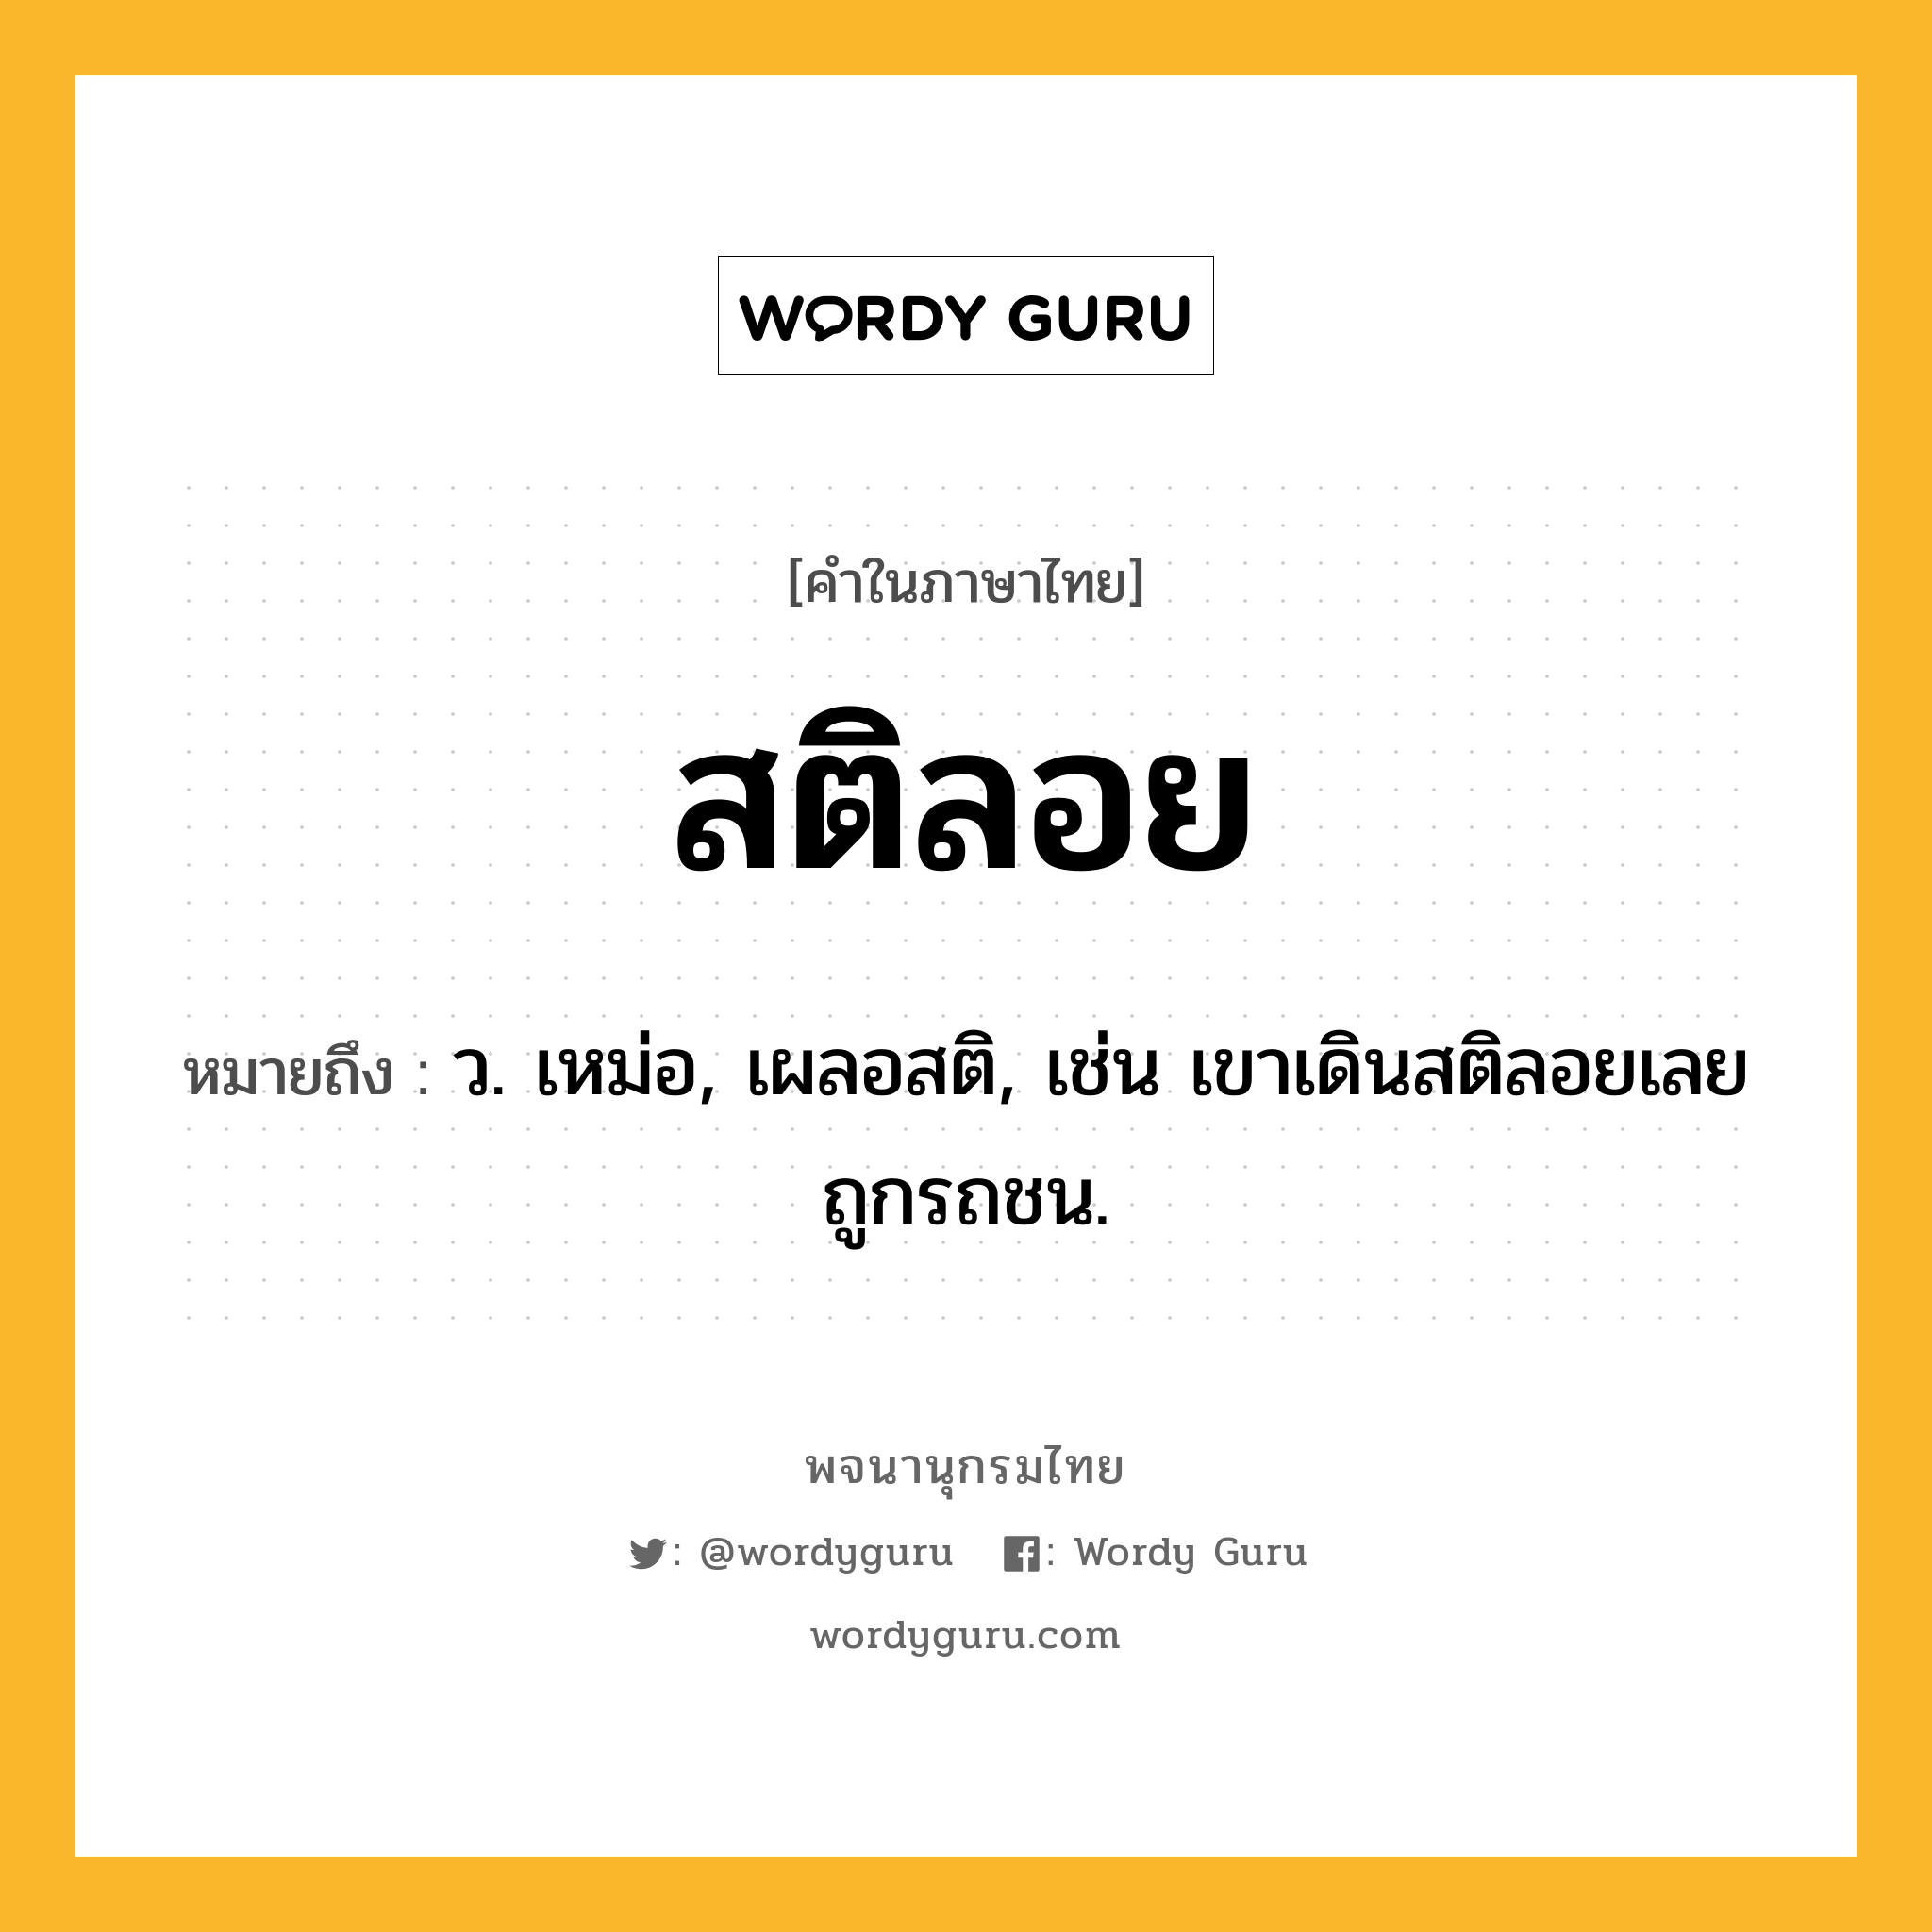 สติลอย ความหมาย หมายถึงอะไร?, คำในภาษาไทย สติลอย หมายถึง ว. เหม่อ, เผลอสติ, เช่น เขาเดินสติลอยเลยถูกรถชน.